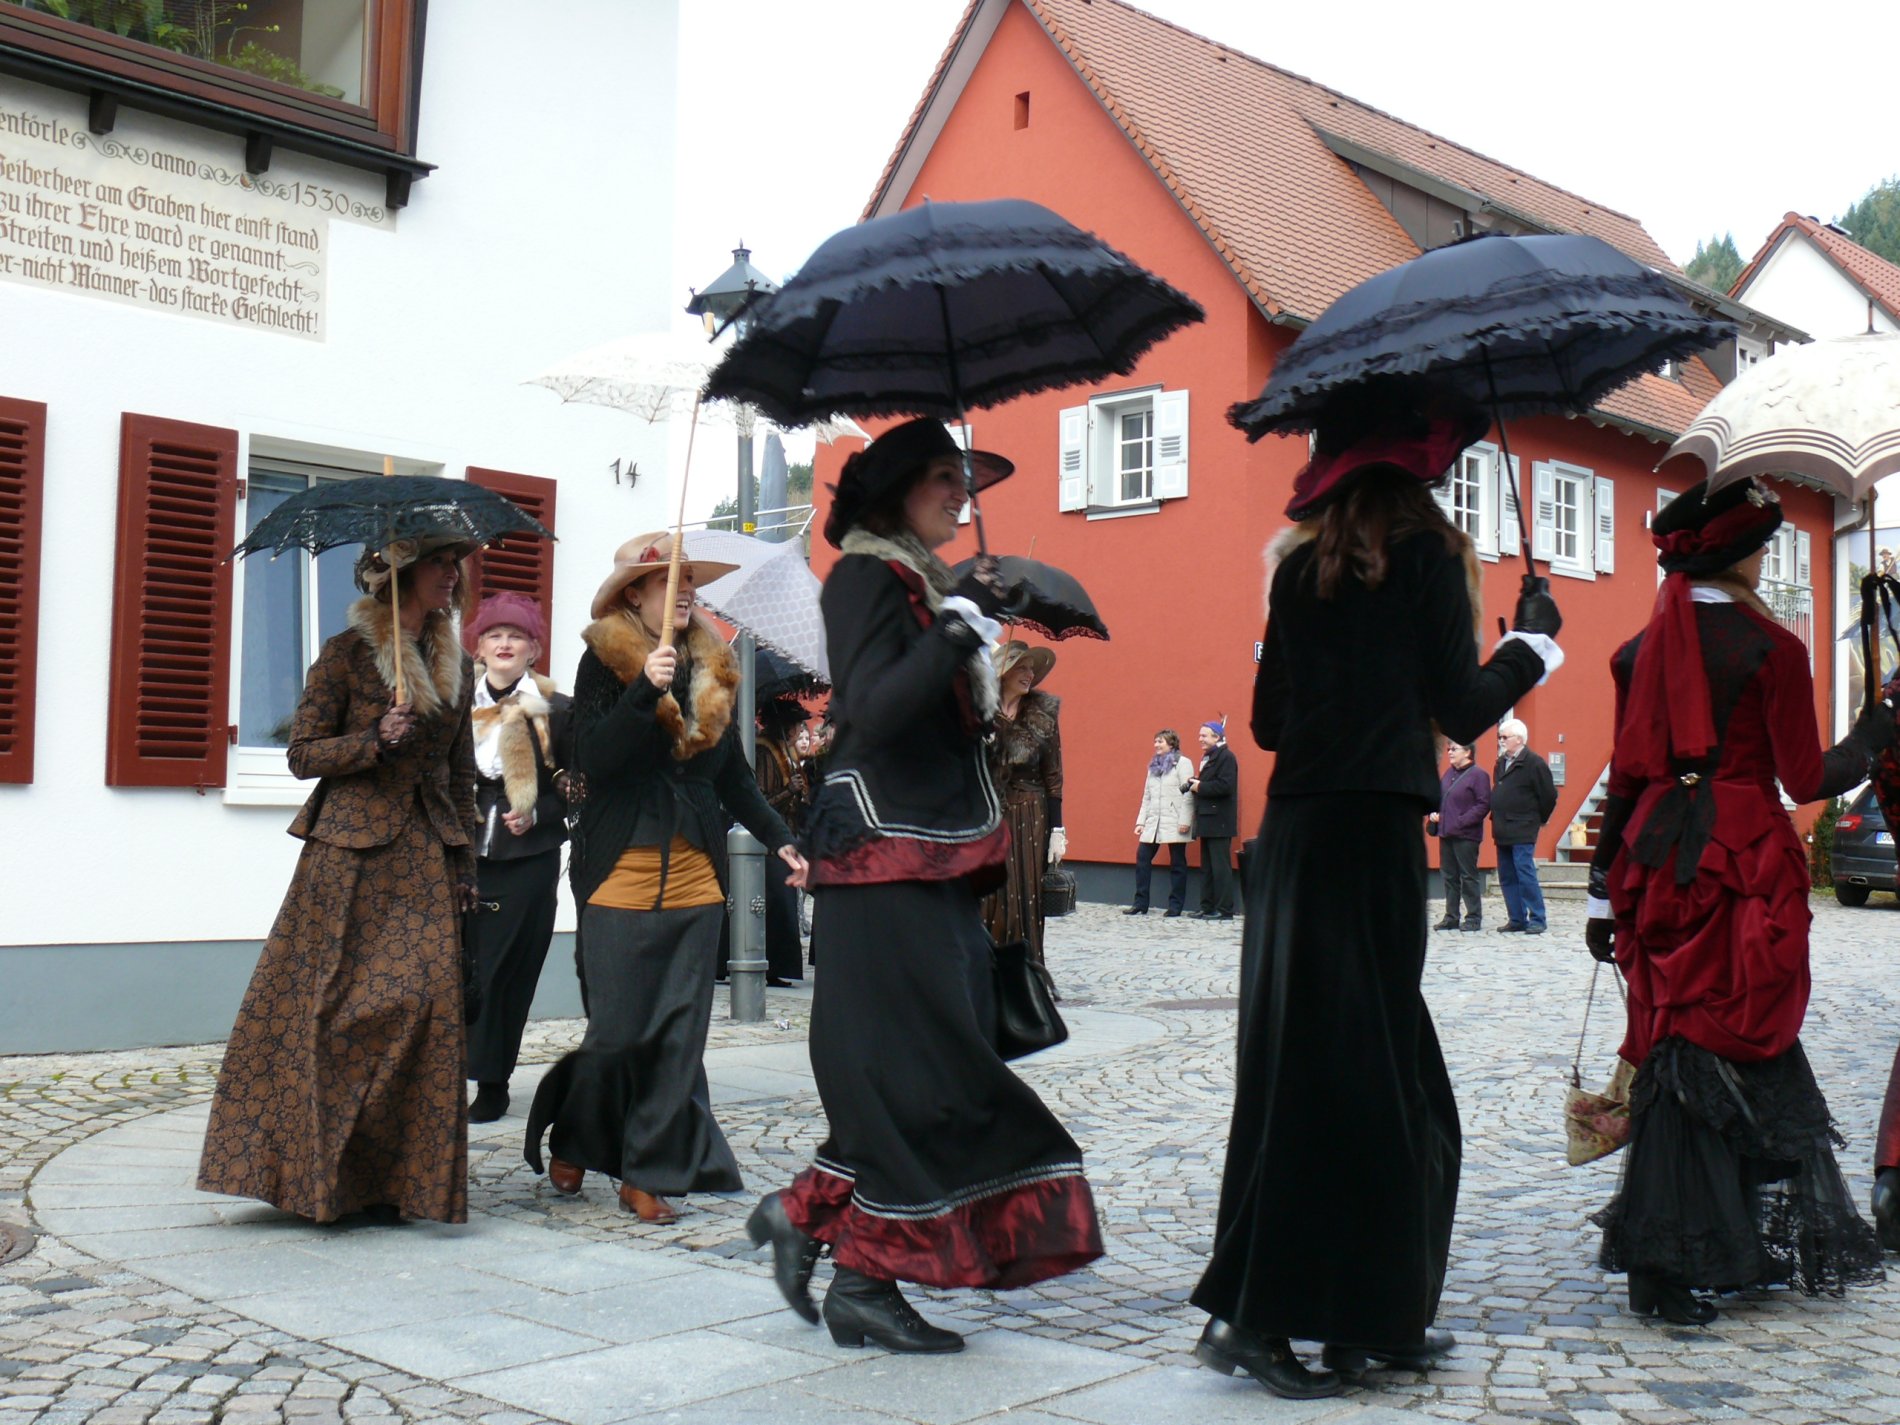 Edle Stoffe und aufwendige Hüte schmücken die holden Damen bei ihrem Umzug / Urheber: Stadt Wolfach